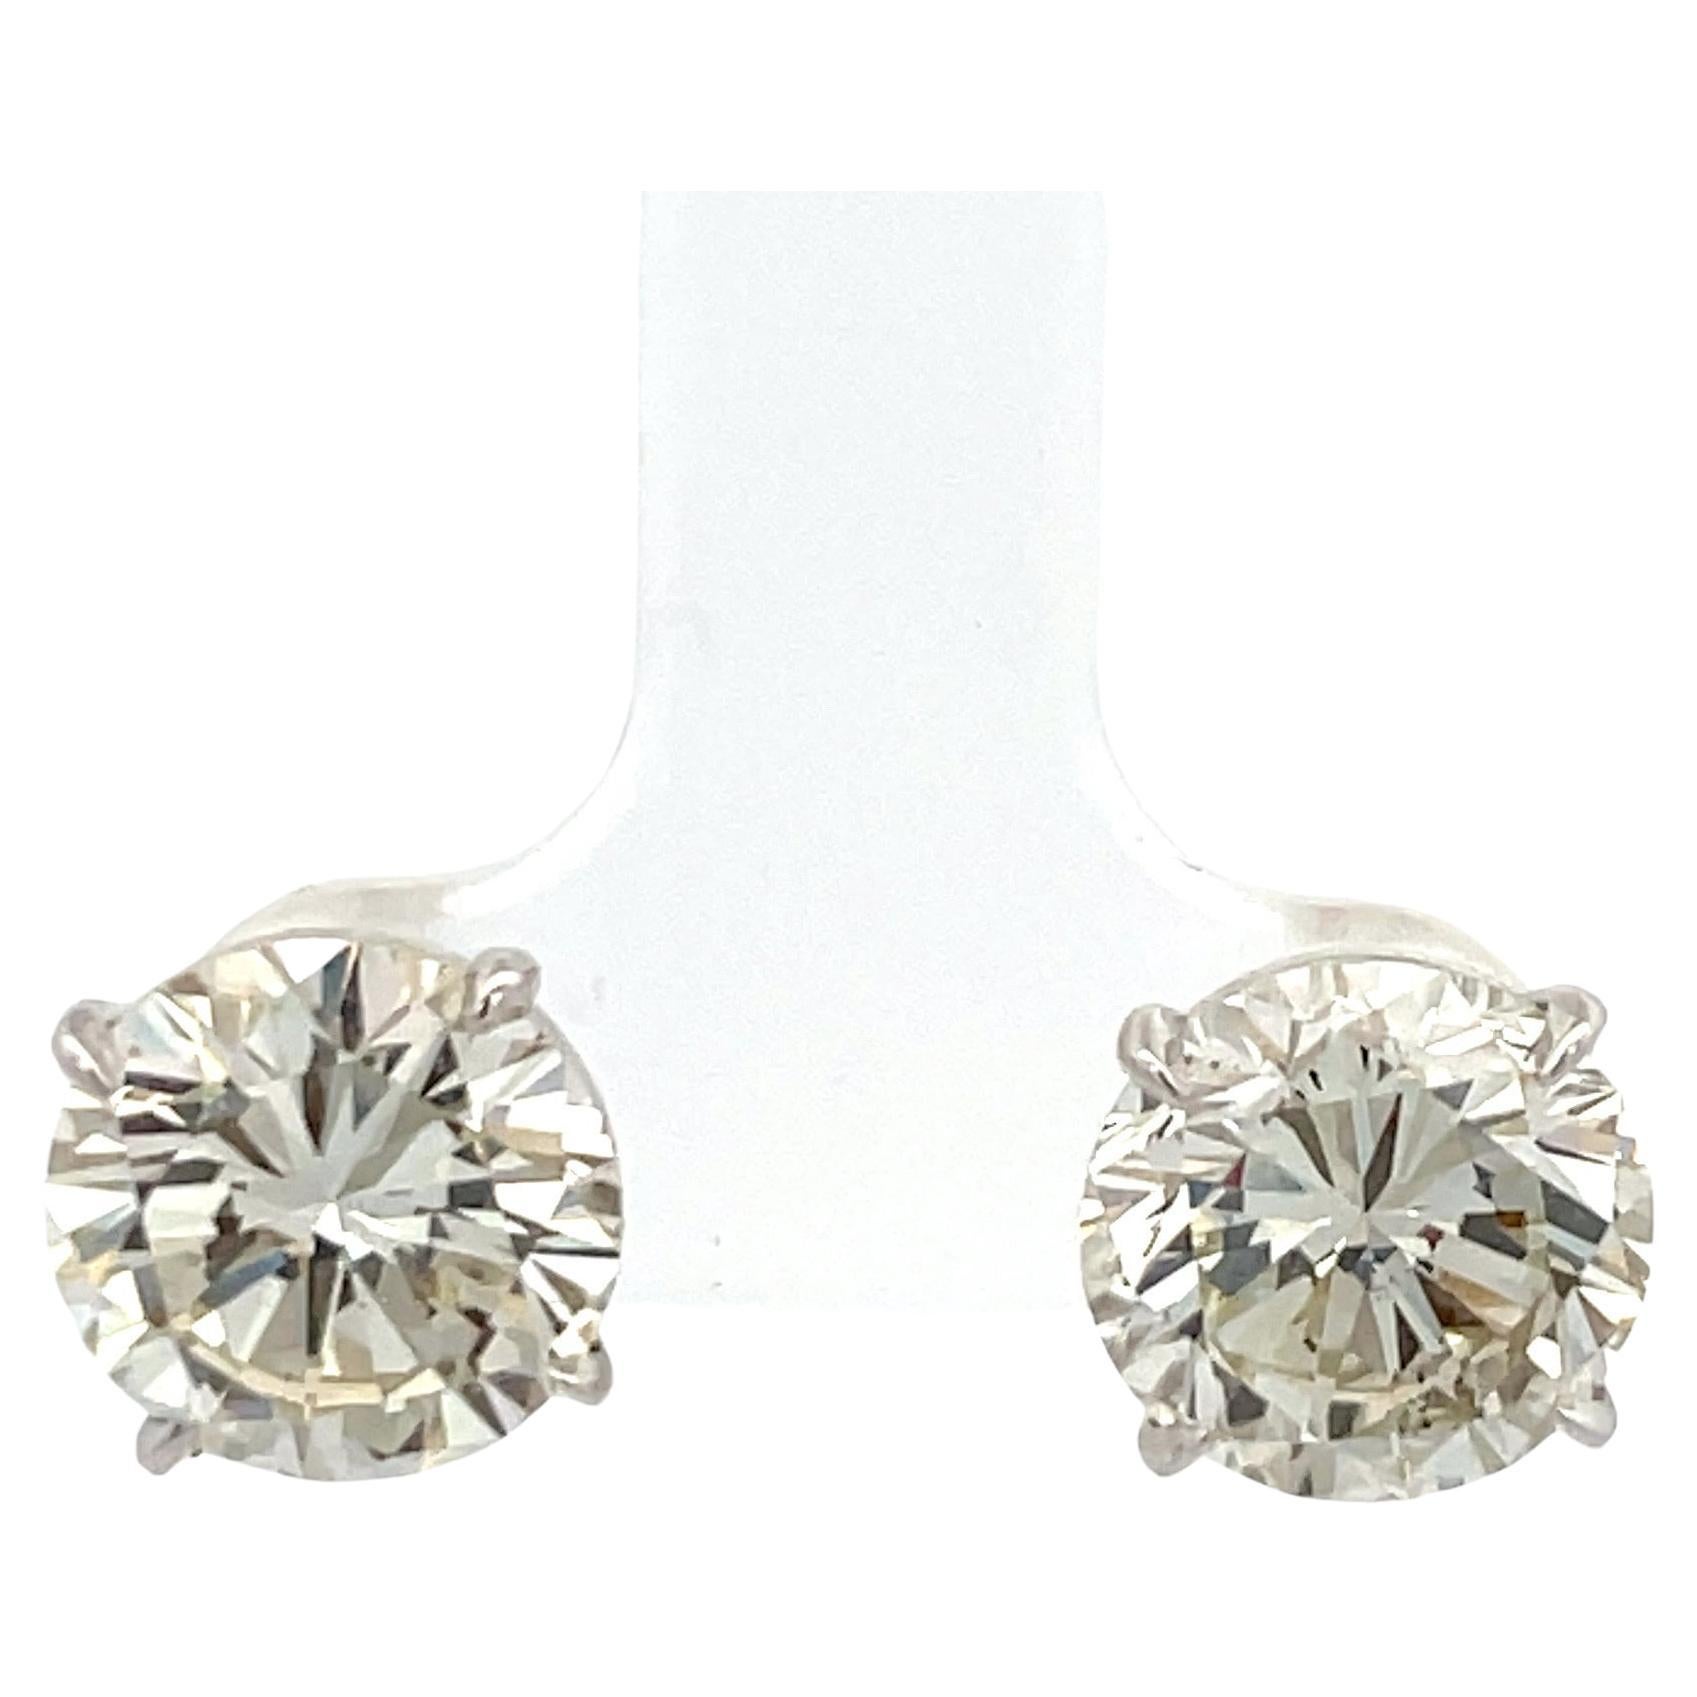 Diamond Stud Earrings 7.00 Carats J-K SI1 18 Karat White Gold Martini Setting For Sale